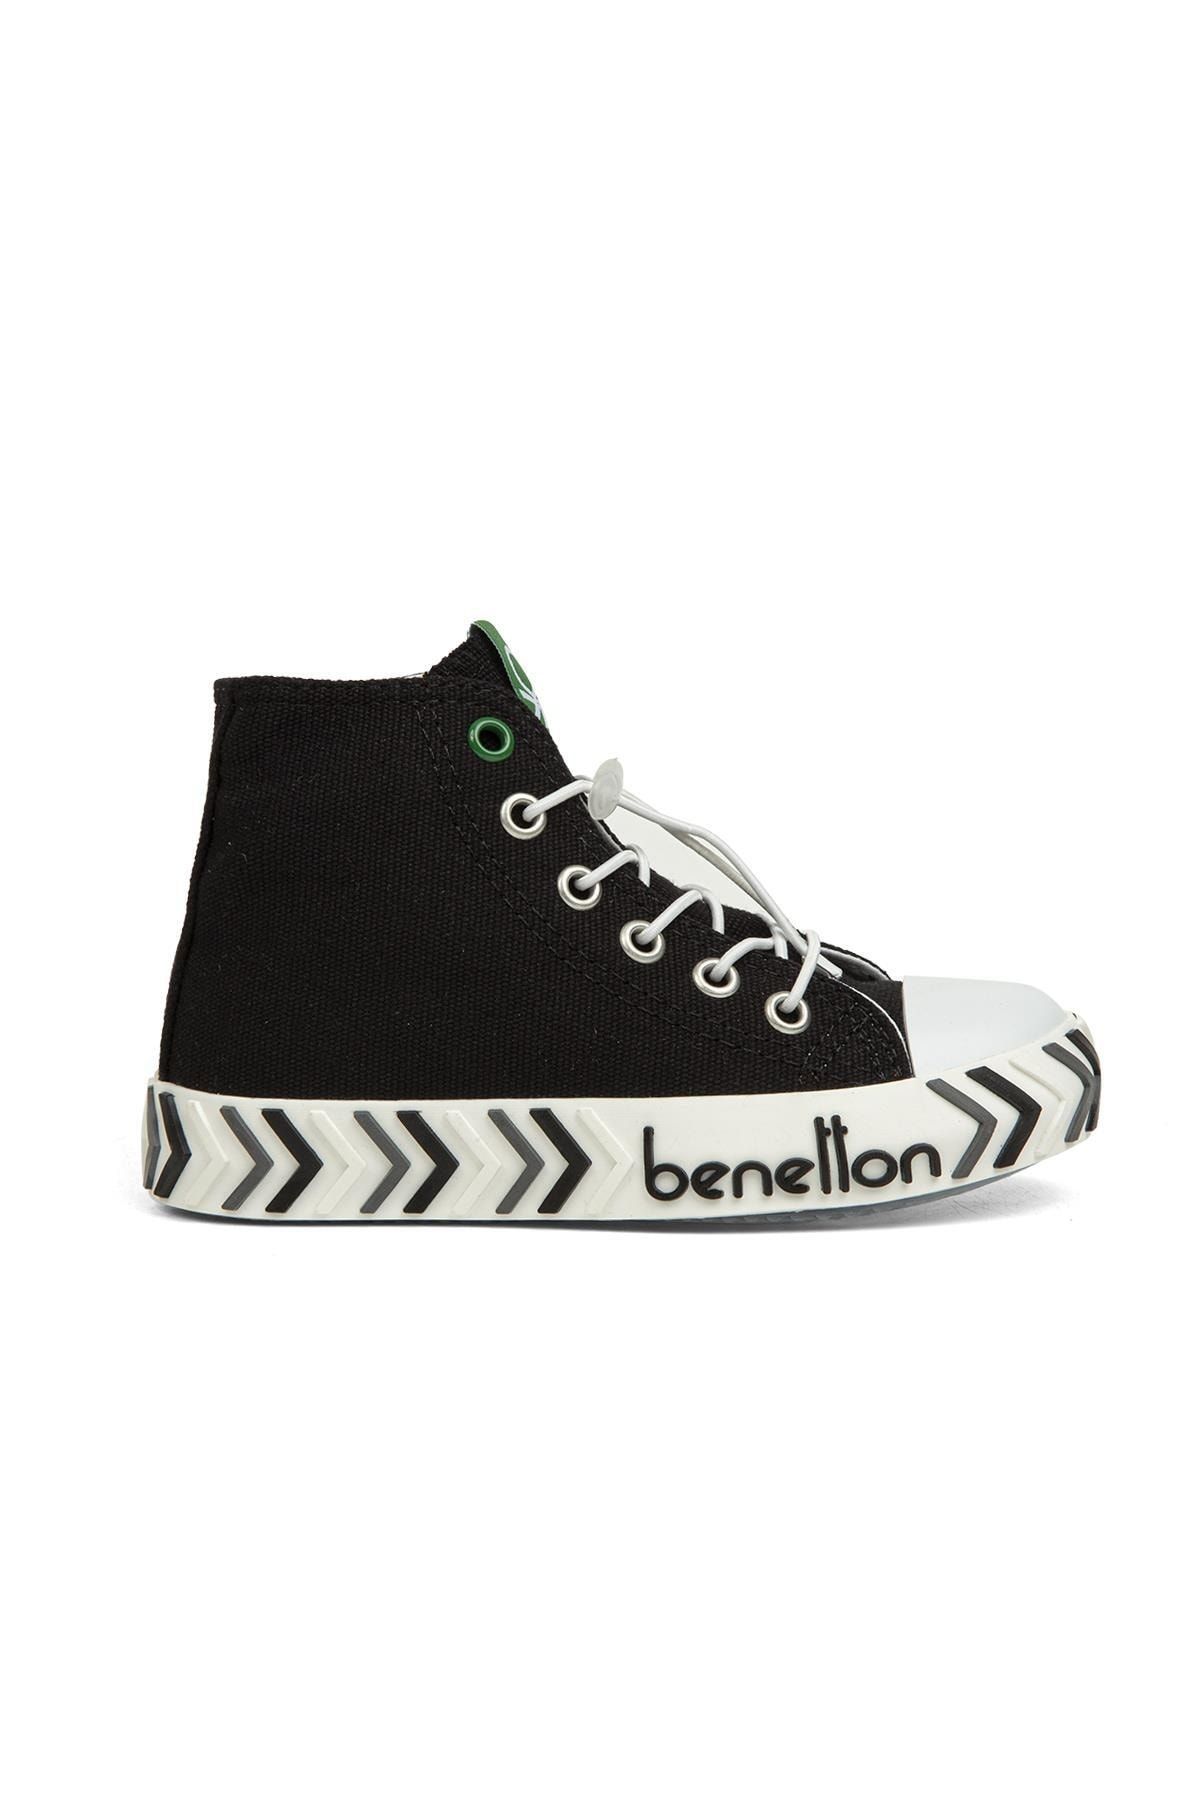 Benetton ® | Bn-30645 - 3394 Siyah - Çocuk Spor Ayakkabı